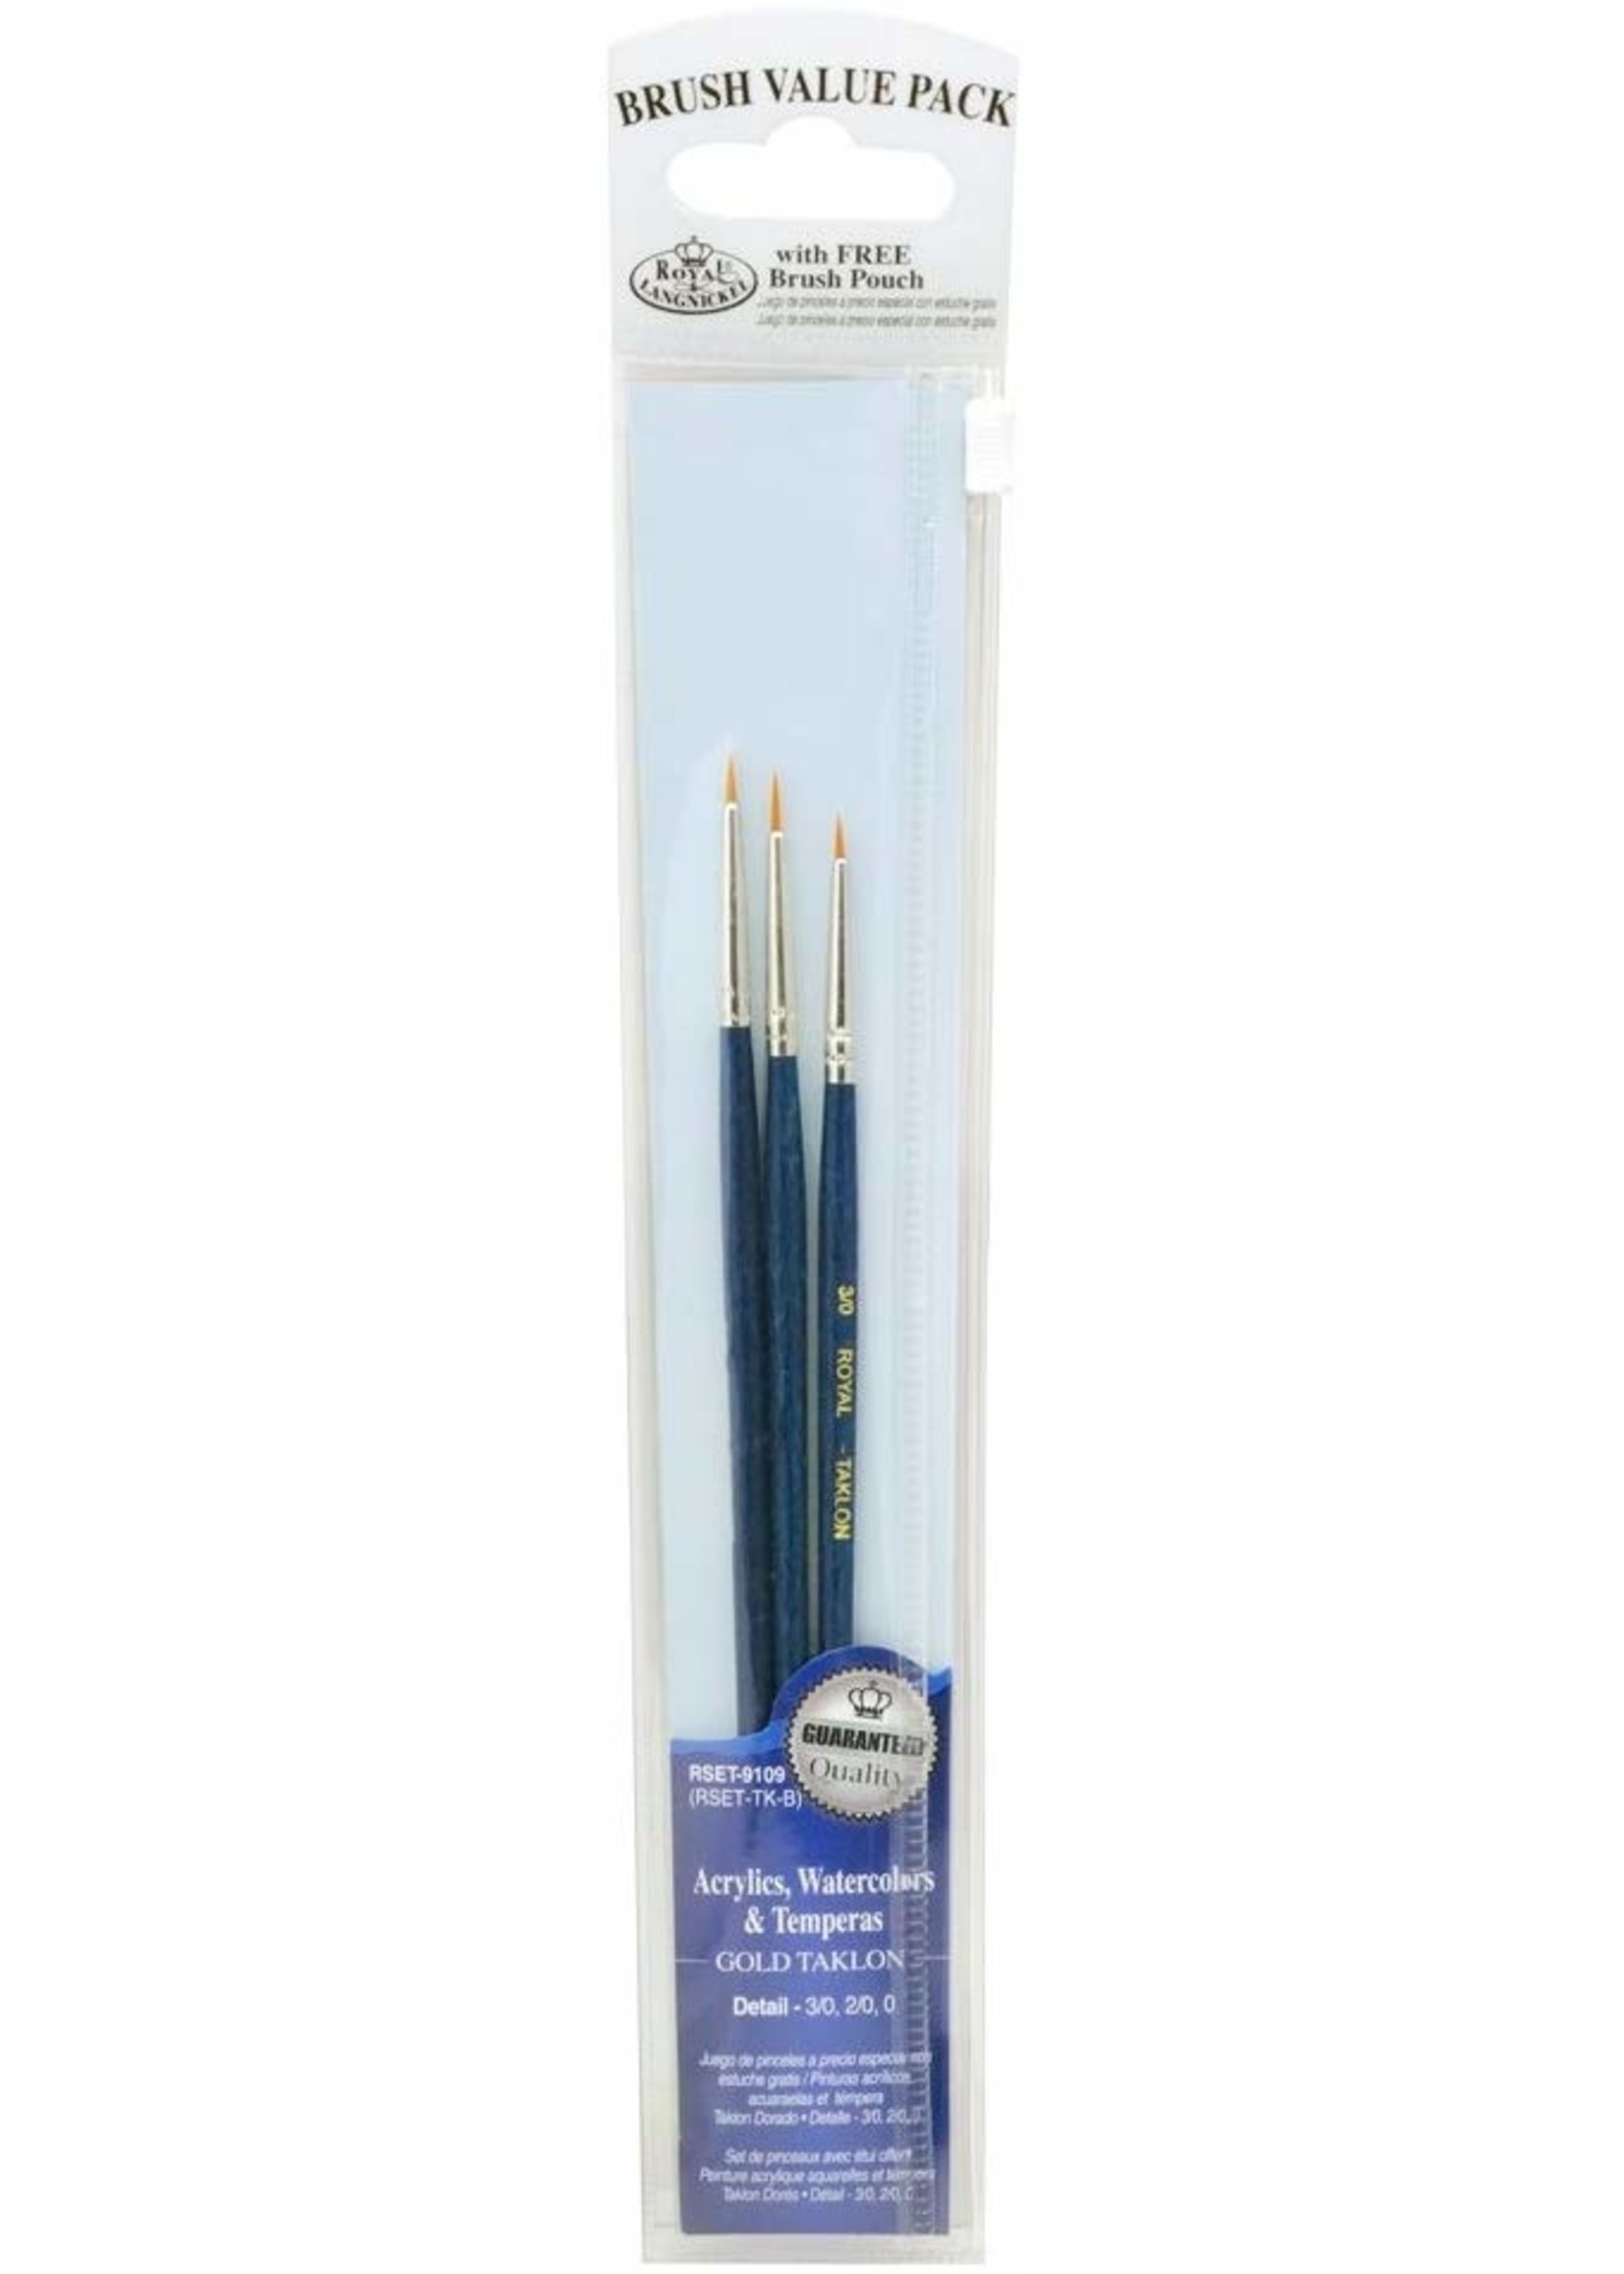 Royal Brush Manufacturing 9109 - Gold Taklon Brush Set 3-Pack - Detail